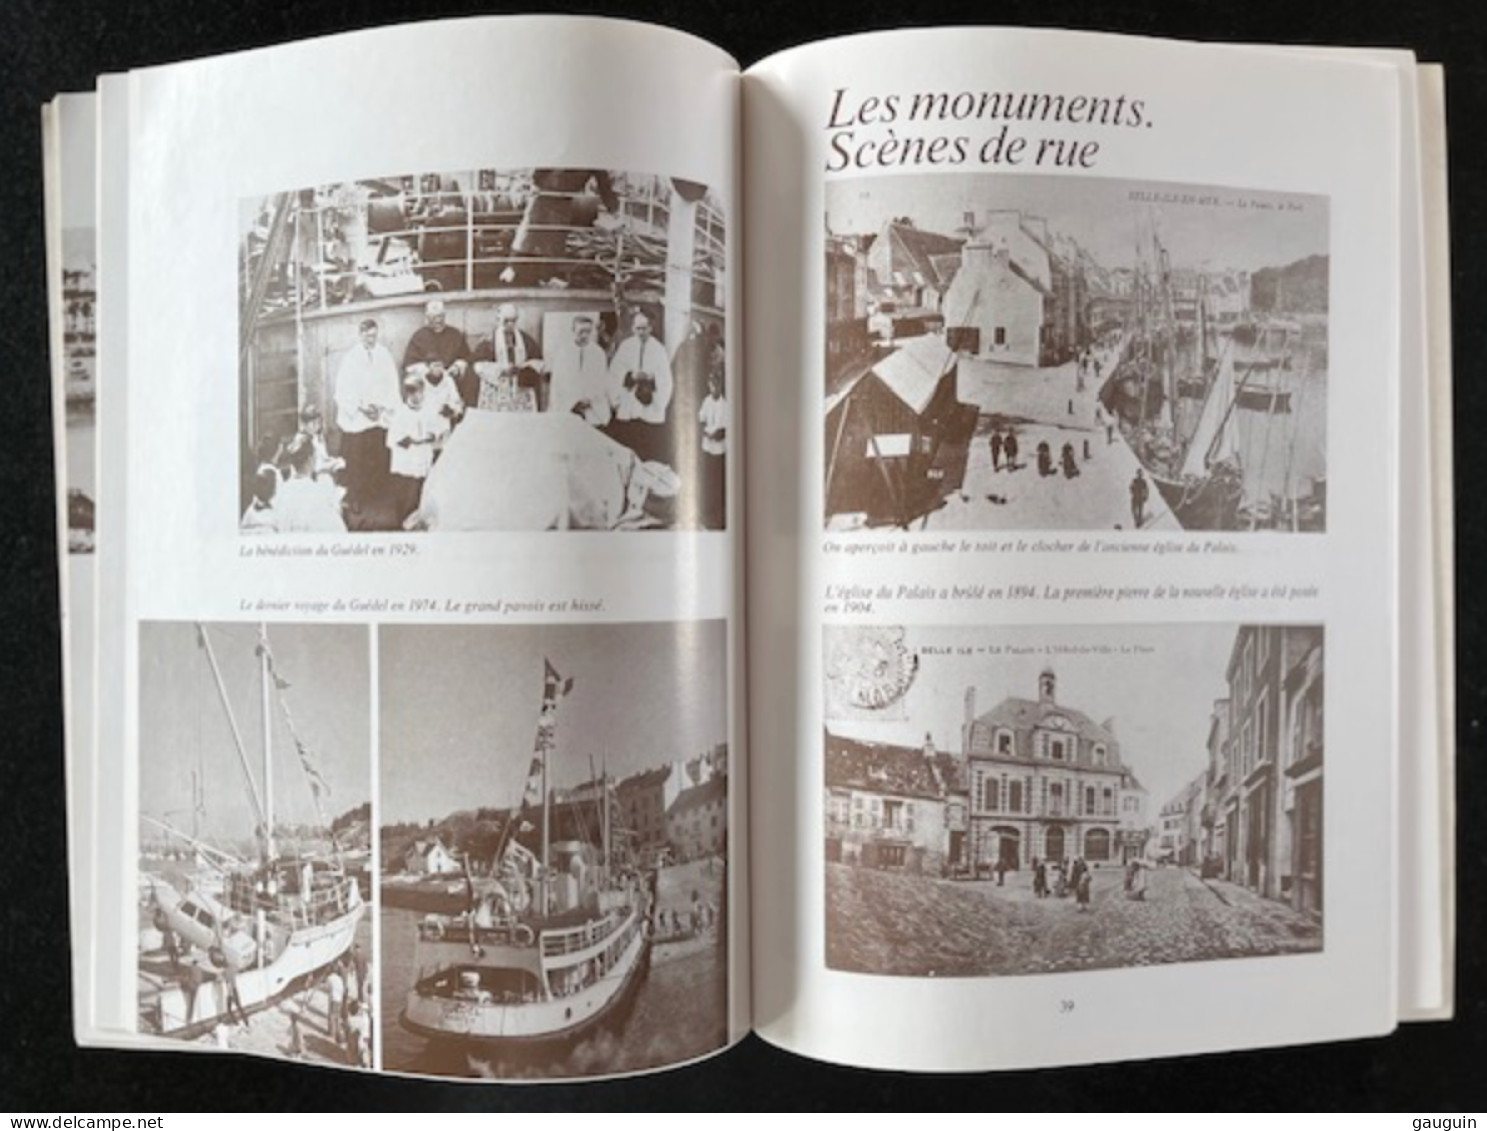 BELLE-ISLE-en-MER - "Images Du Passé" Repro. Cartes Postales Anciennes - Editions Lestrac - 78 Pages / 1977 §TOP RARE§ - Livres & Catalogues